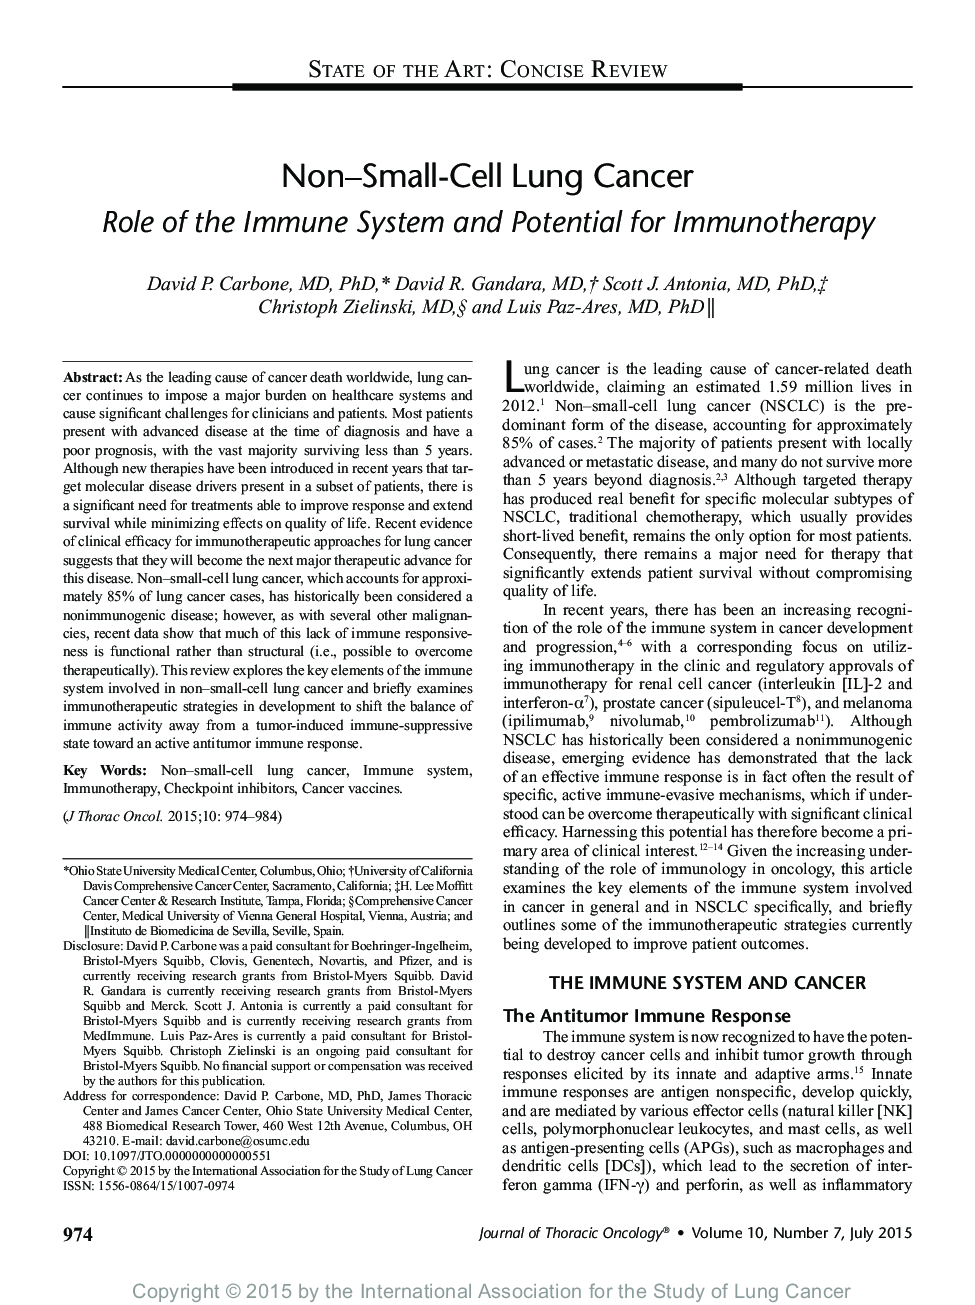 سرطان ریه غیر سلولی: نقش سیستم ایمنی و توان بالقوه برای ایمونوتراپی 